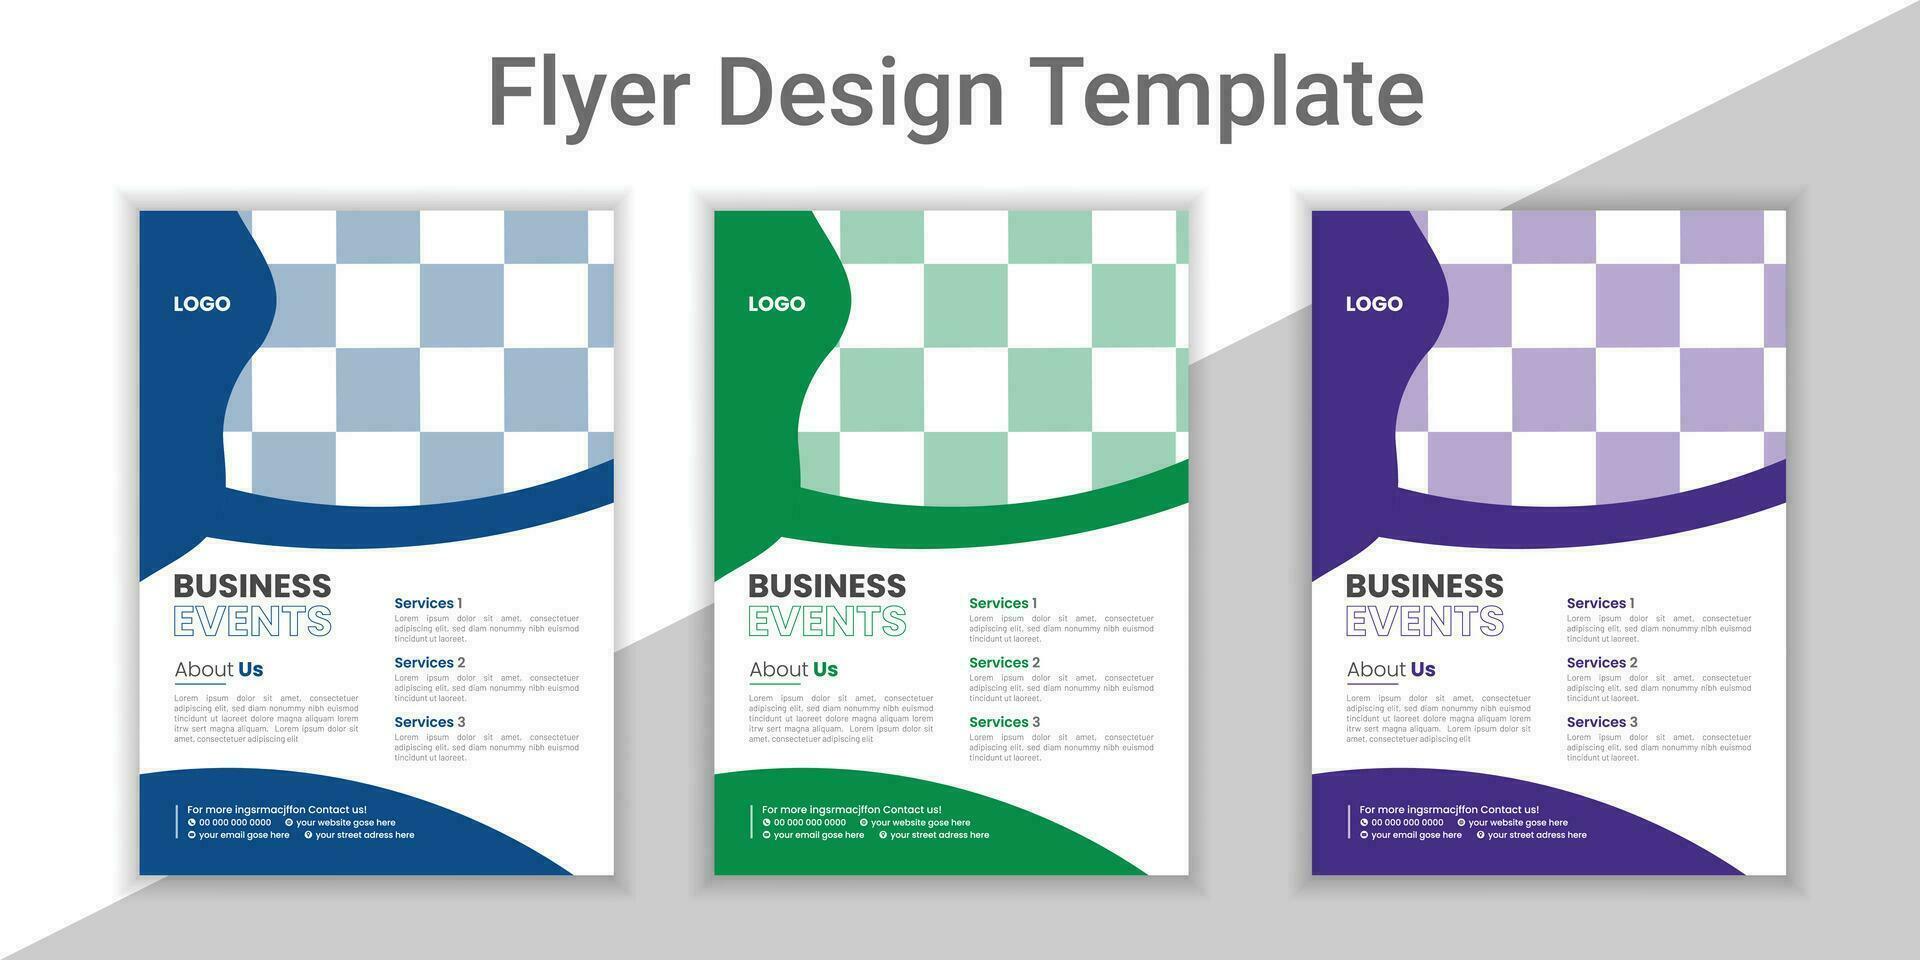 Modern Corporate Business Flyer Design Template, Digital Business, Creative Marketing, Modern Layout Design ,Creative Flyer Design Layout Template in A4, Vector Digital Business Flyer Vector Template.